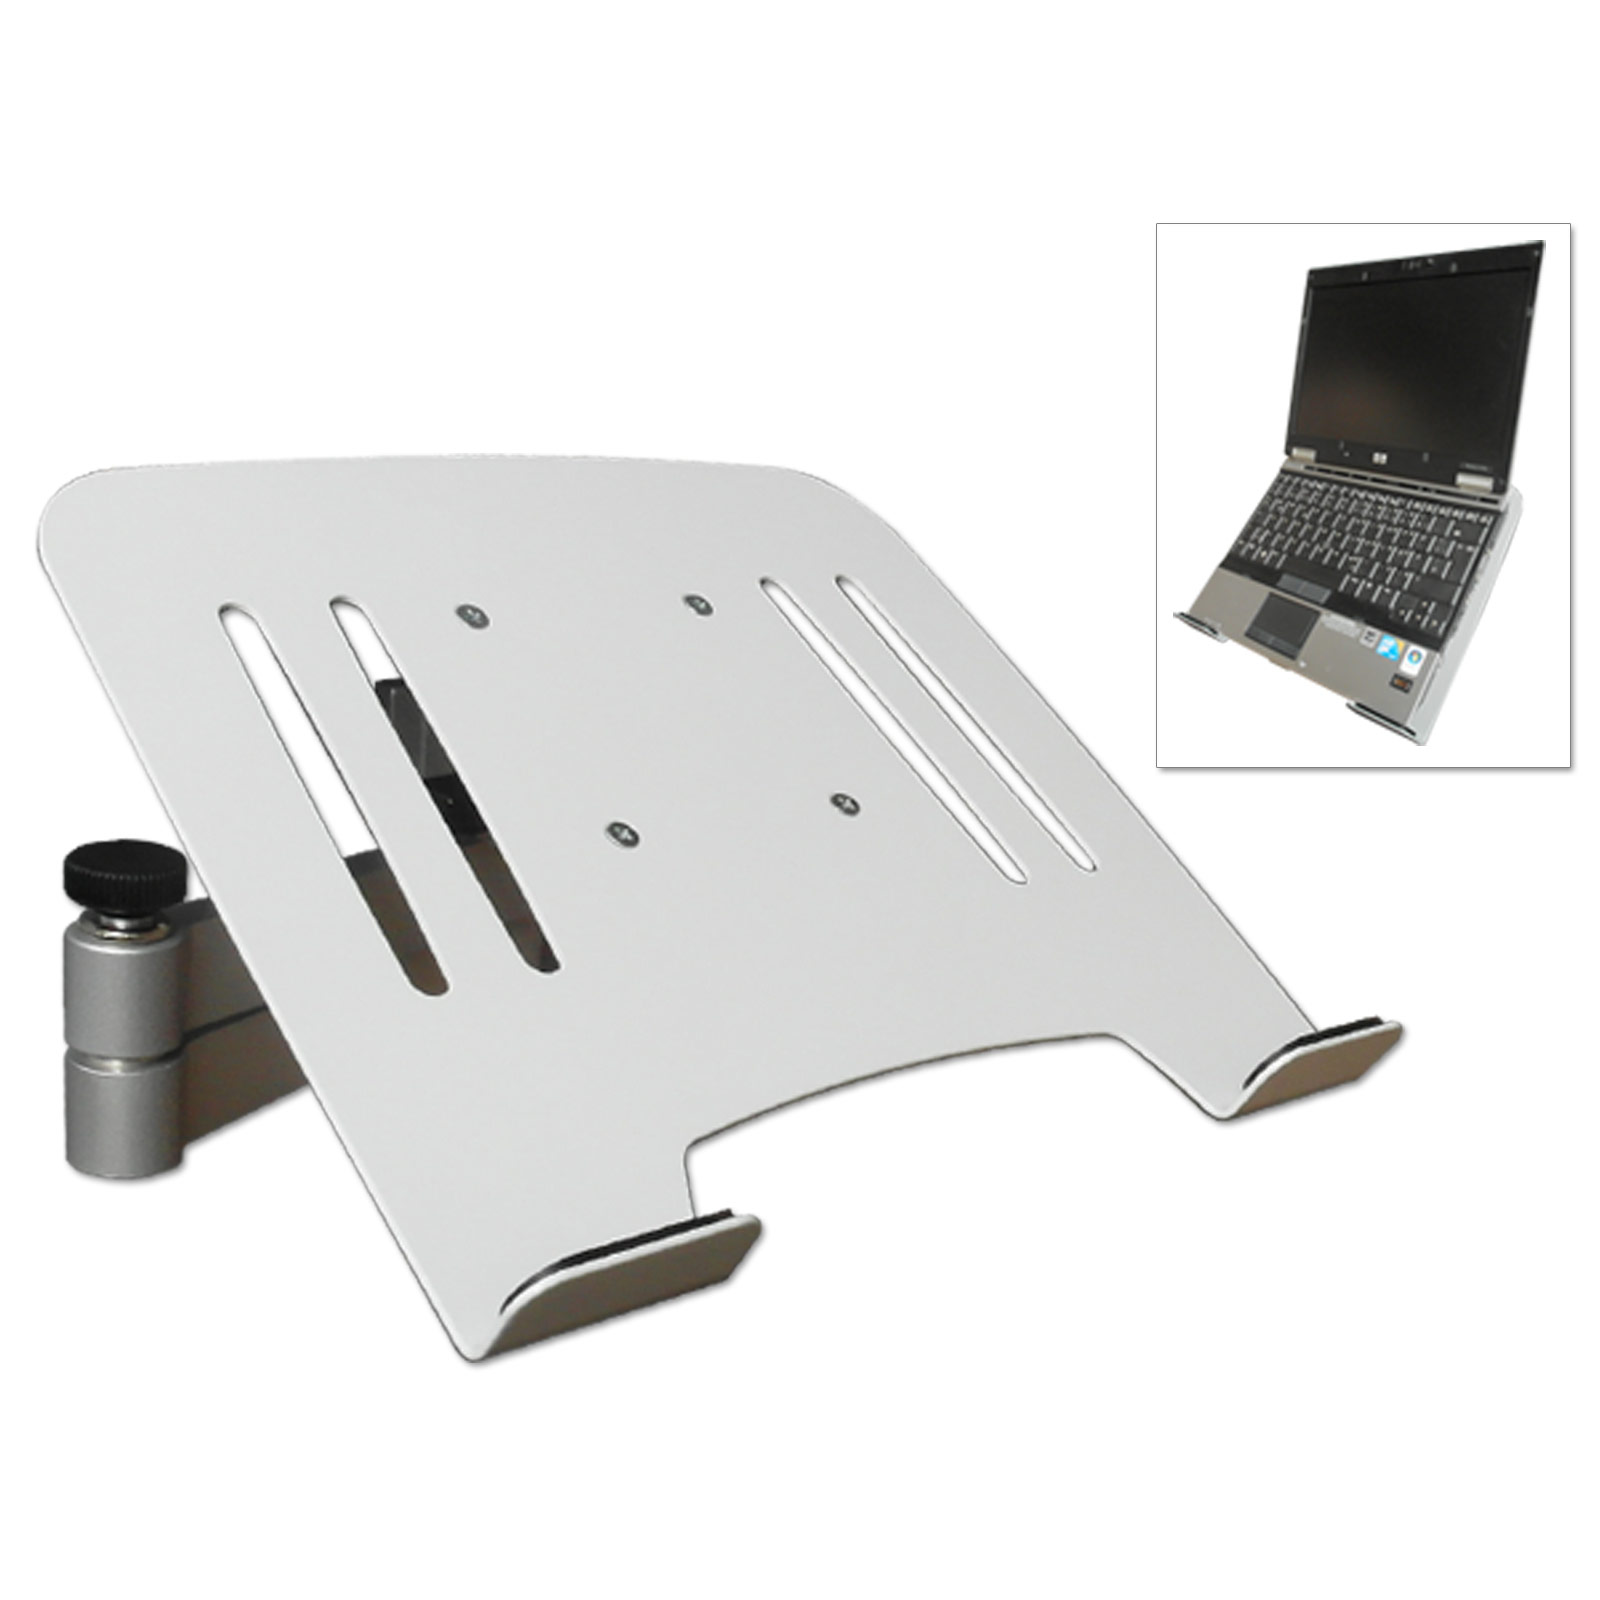 Notebook silber - Halterung DRALL Adapter Laptop INSTRUMENTS weiß mit Netbook Wandhalterung Universal Wandhalterung Ablage -